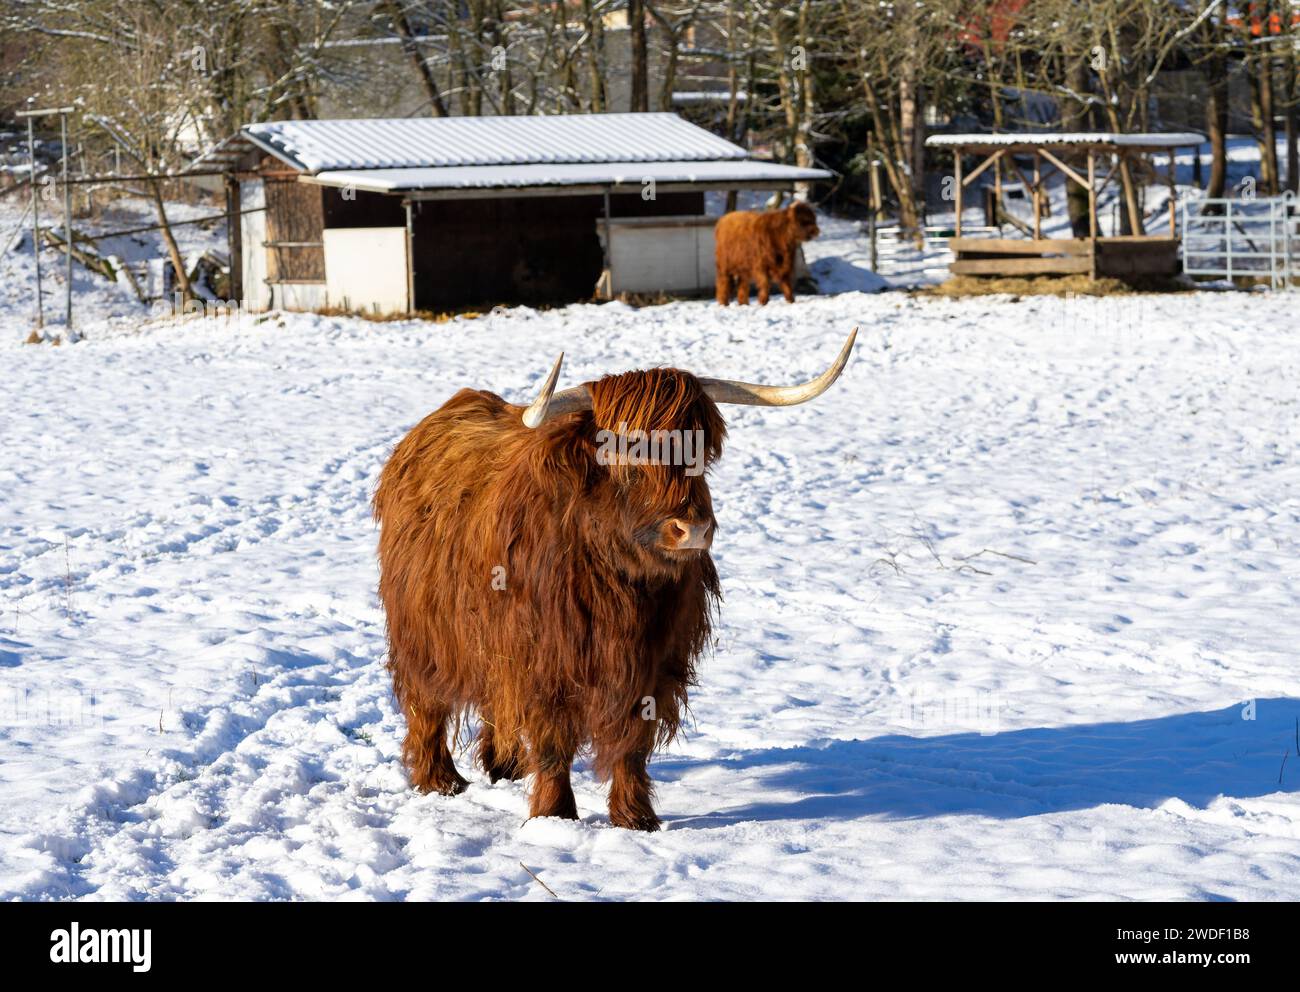 vache écossaise des hautes terres dans un paysage hivernal à la ferme Banque D'Images